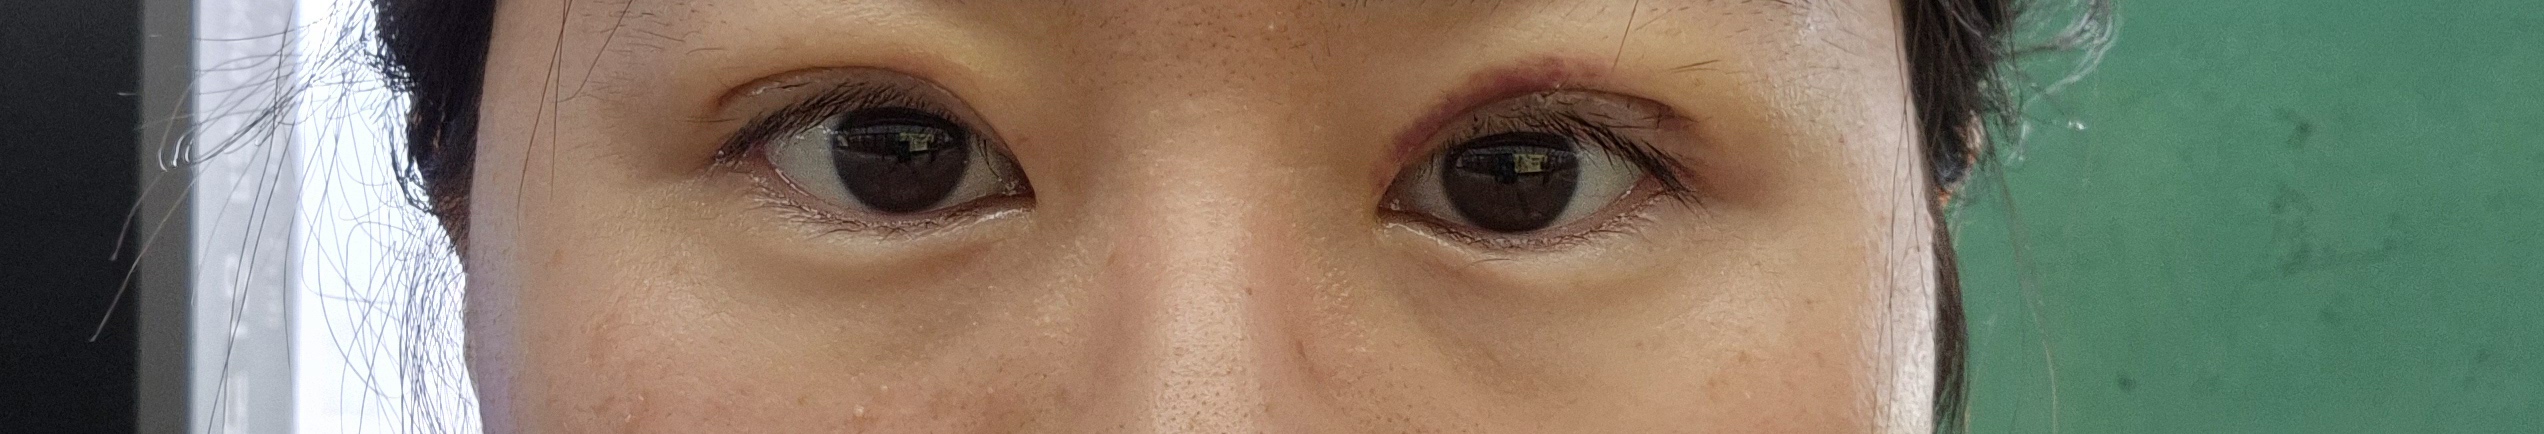 수술 직후사진. 왼쪽눈은 오늘 재수해서 붓기가 좀 있고 오른쪽 눈은 일주일간 붓기가 좀더 빠진 상태